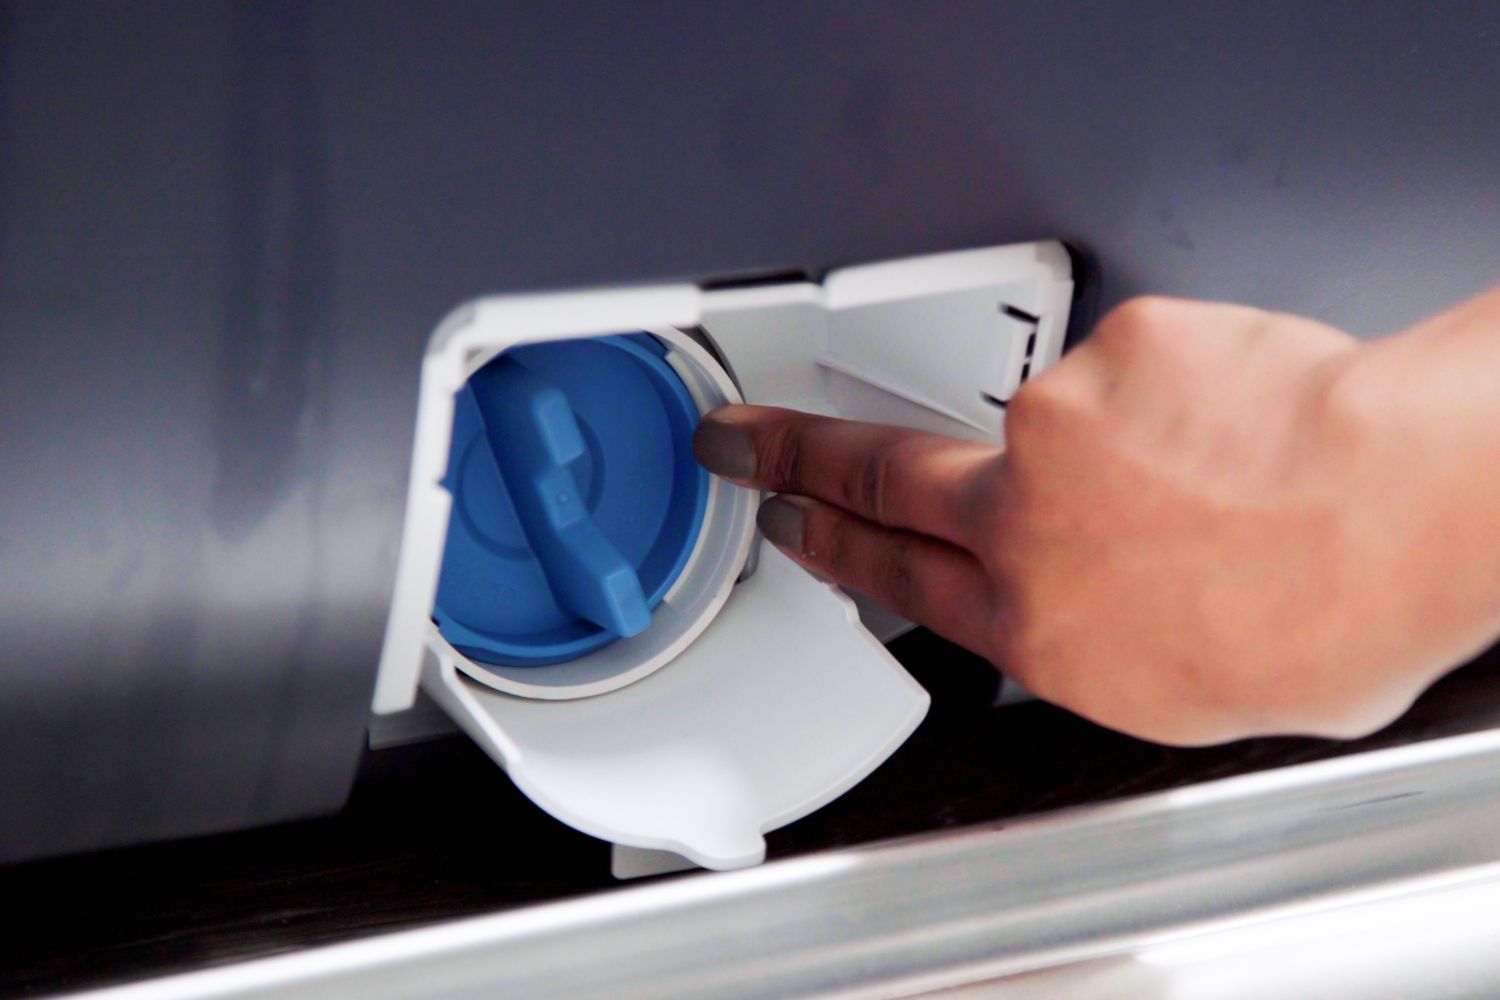 Filtro de drenagem azul empurrado de volta para a lavadora com os dedos conectados ao sistema de fossa séptica